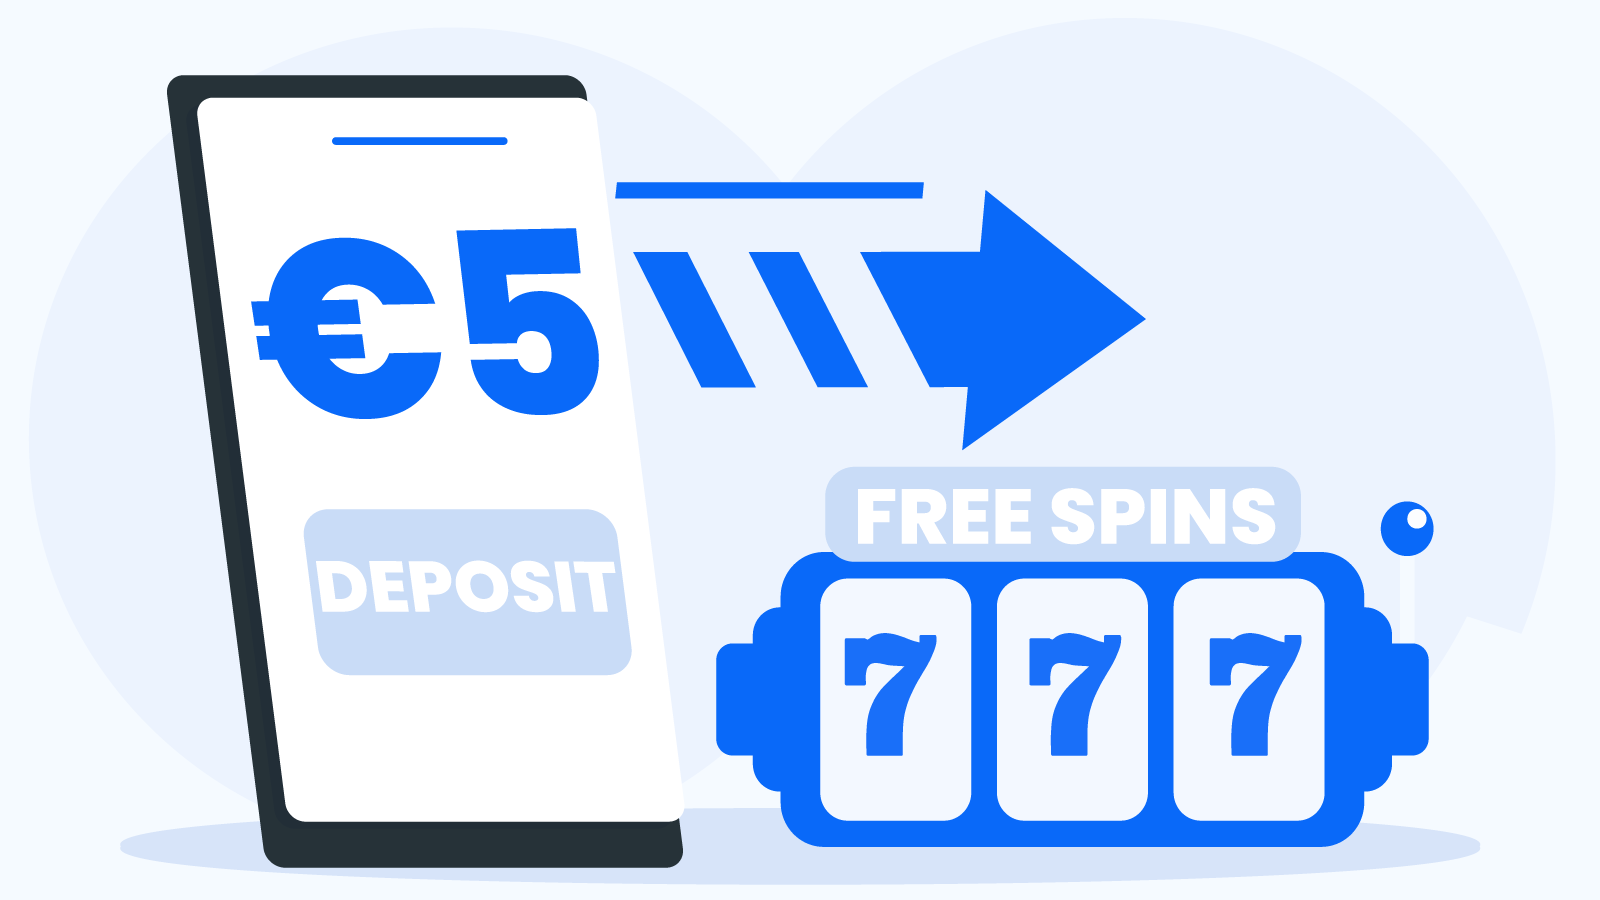 Deposit €5 Get Free Spins